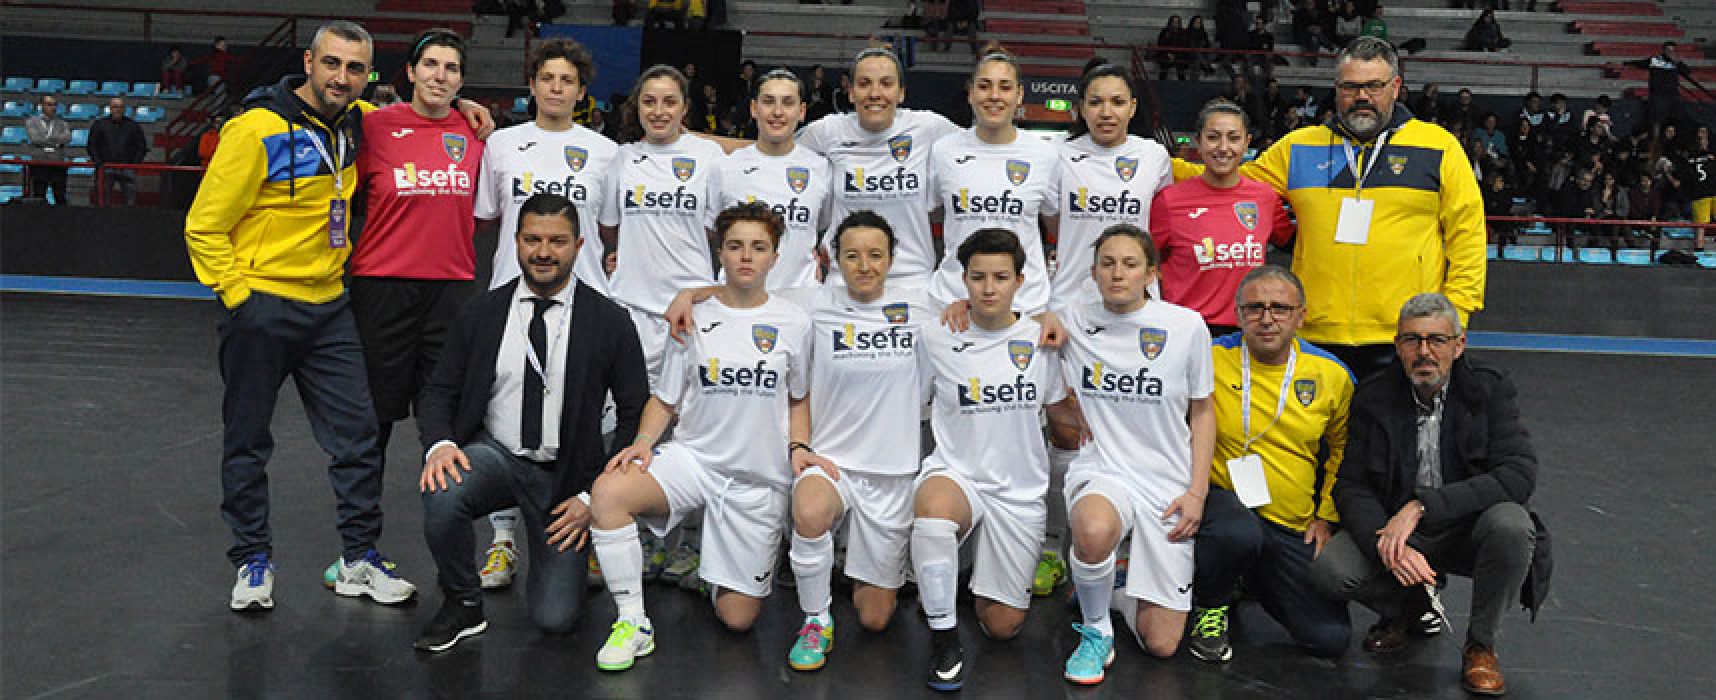 Coppa Italia: il Bisceglie Femminile si ferma sul più bello, sconfitta in finale